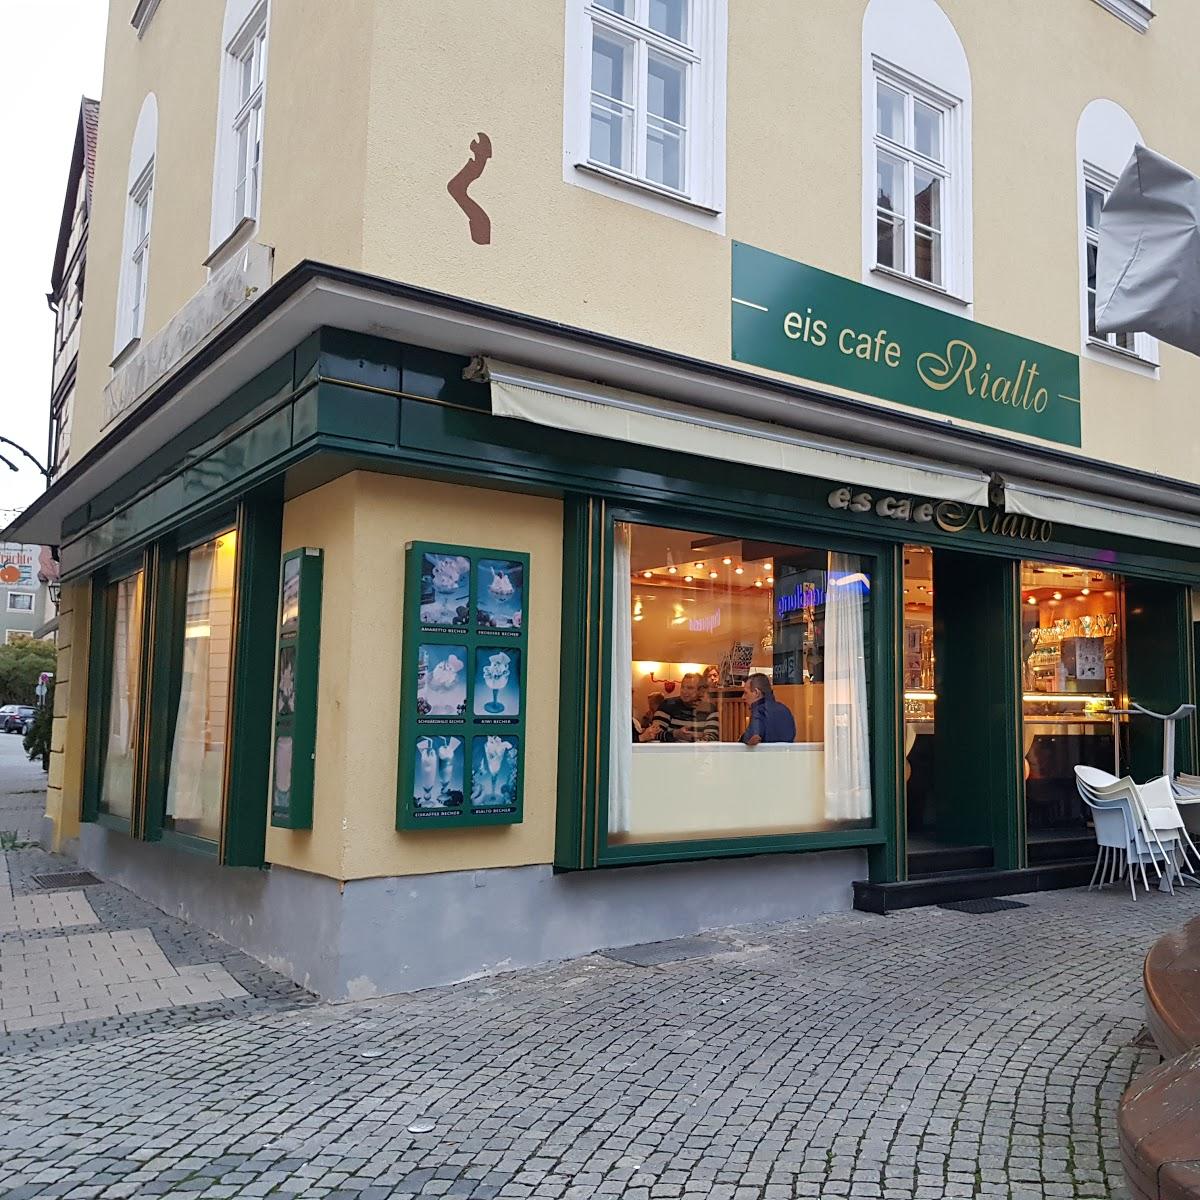 Restaurant "Eiscafé Rialto" in Ansbach